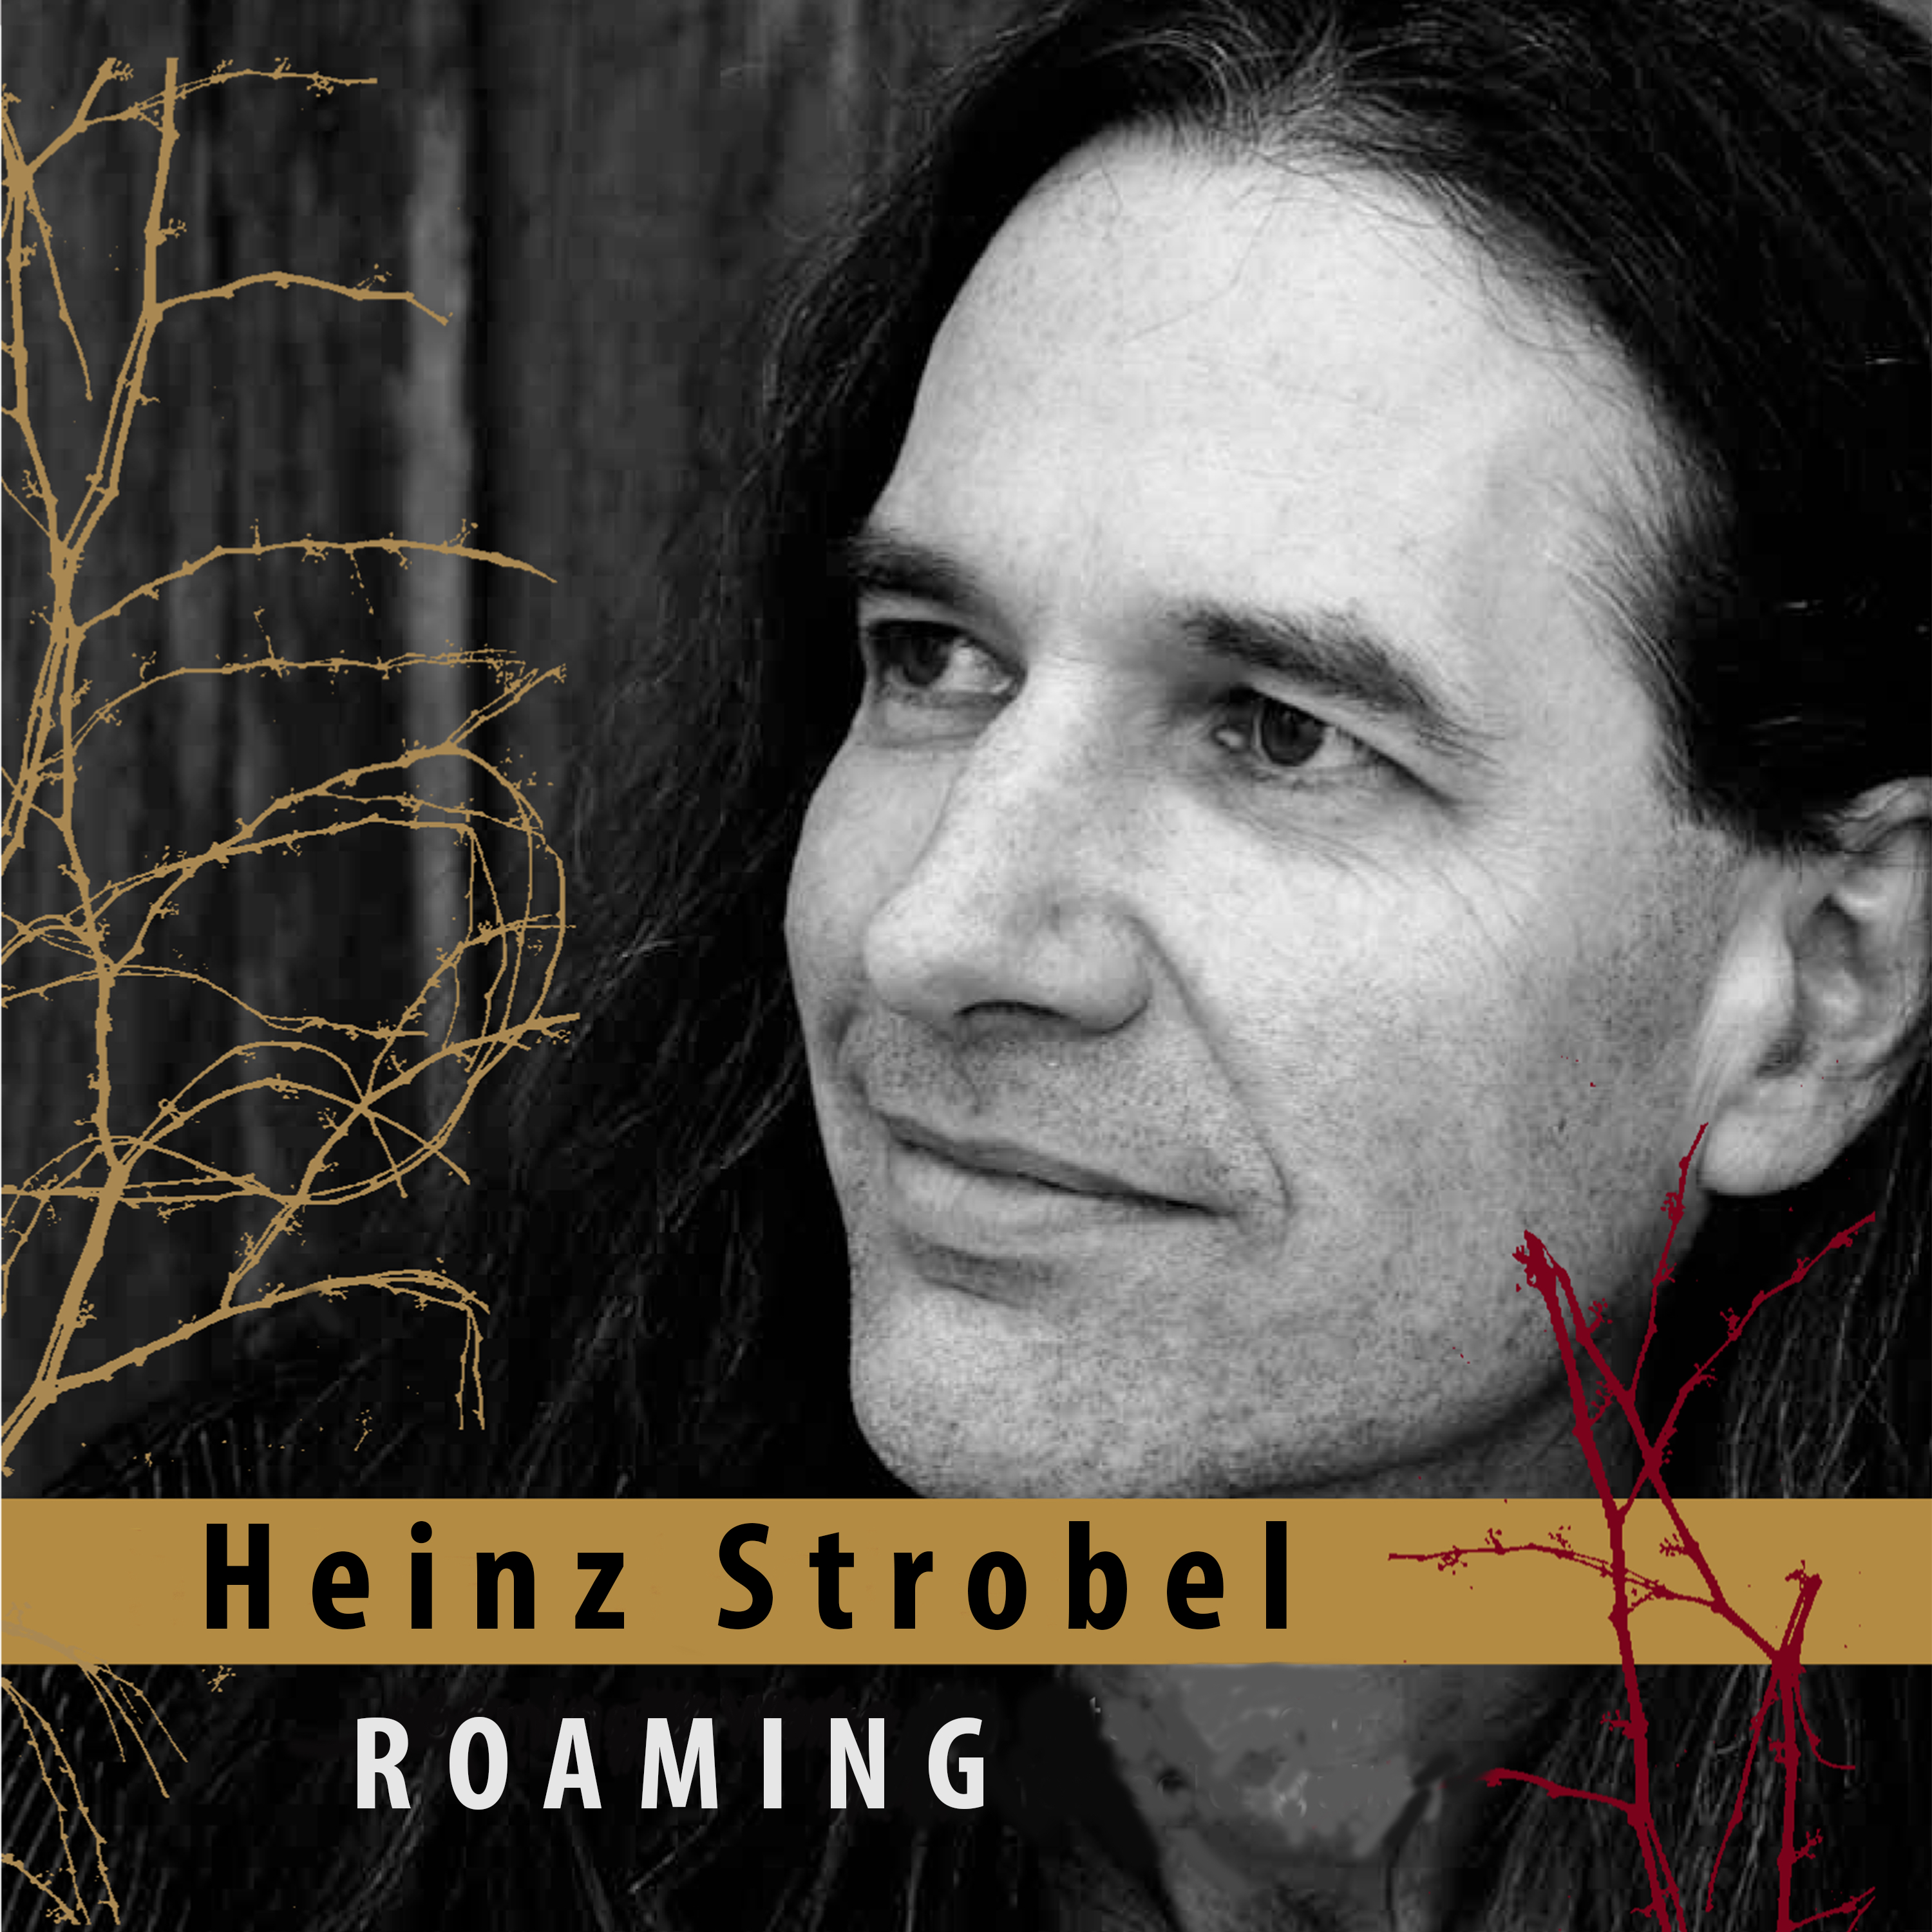 Heinz Strobels CD 